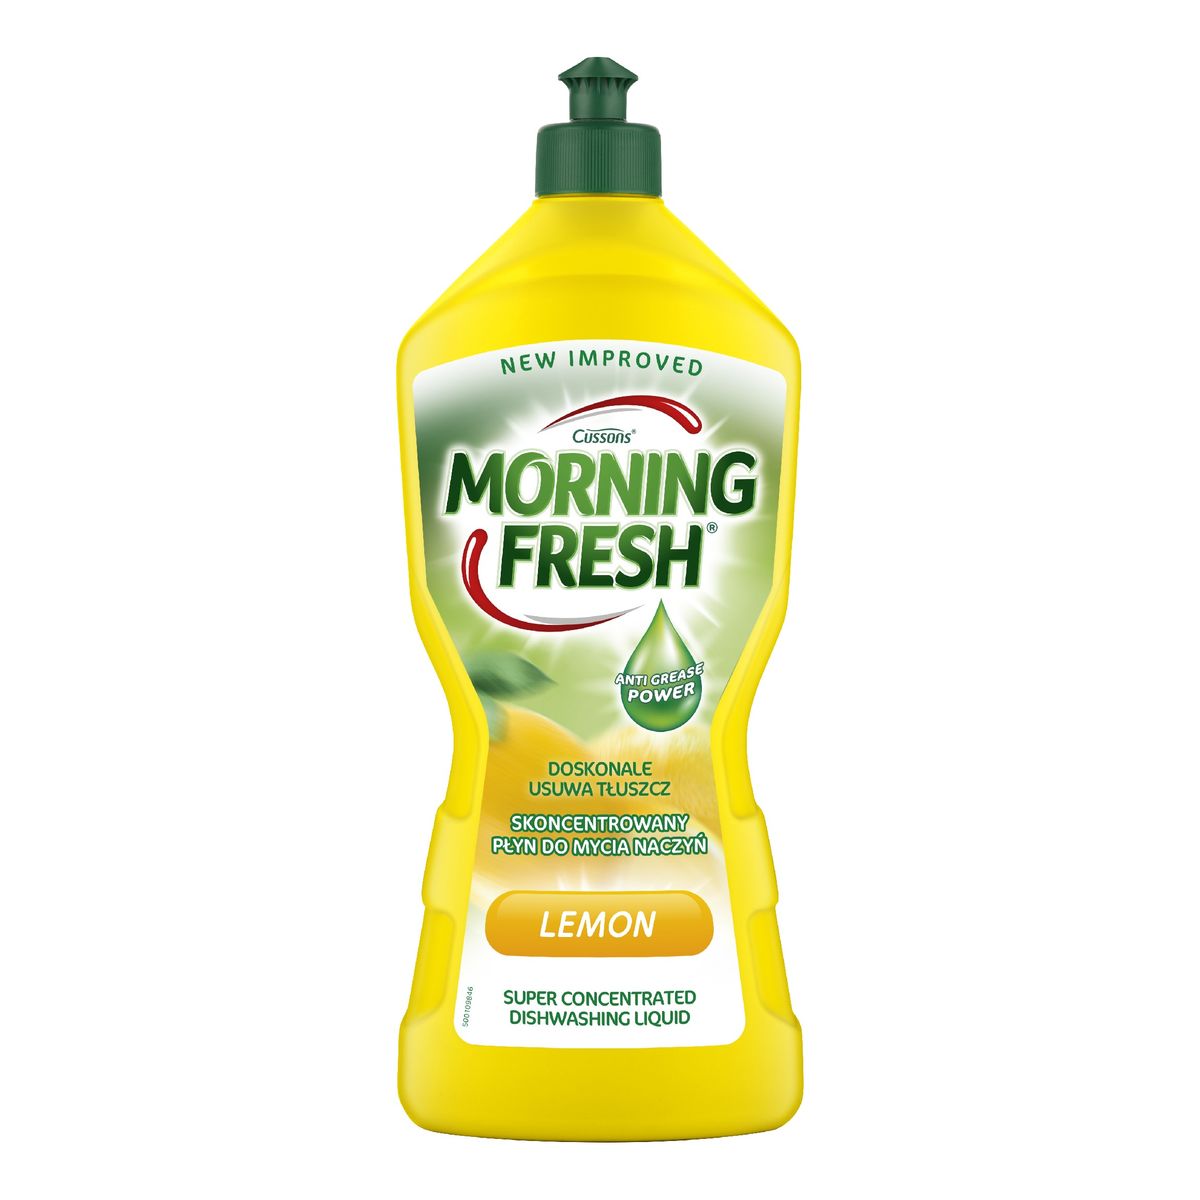 Morning Fresh skoncentrowany płyn do mycia naczyń-lemon 900ml